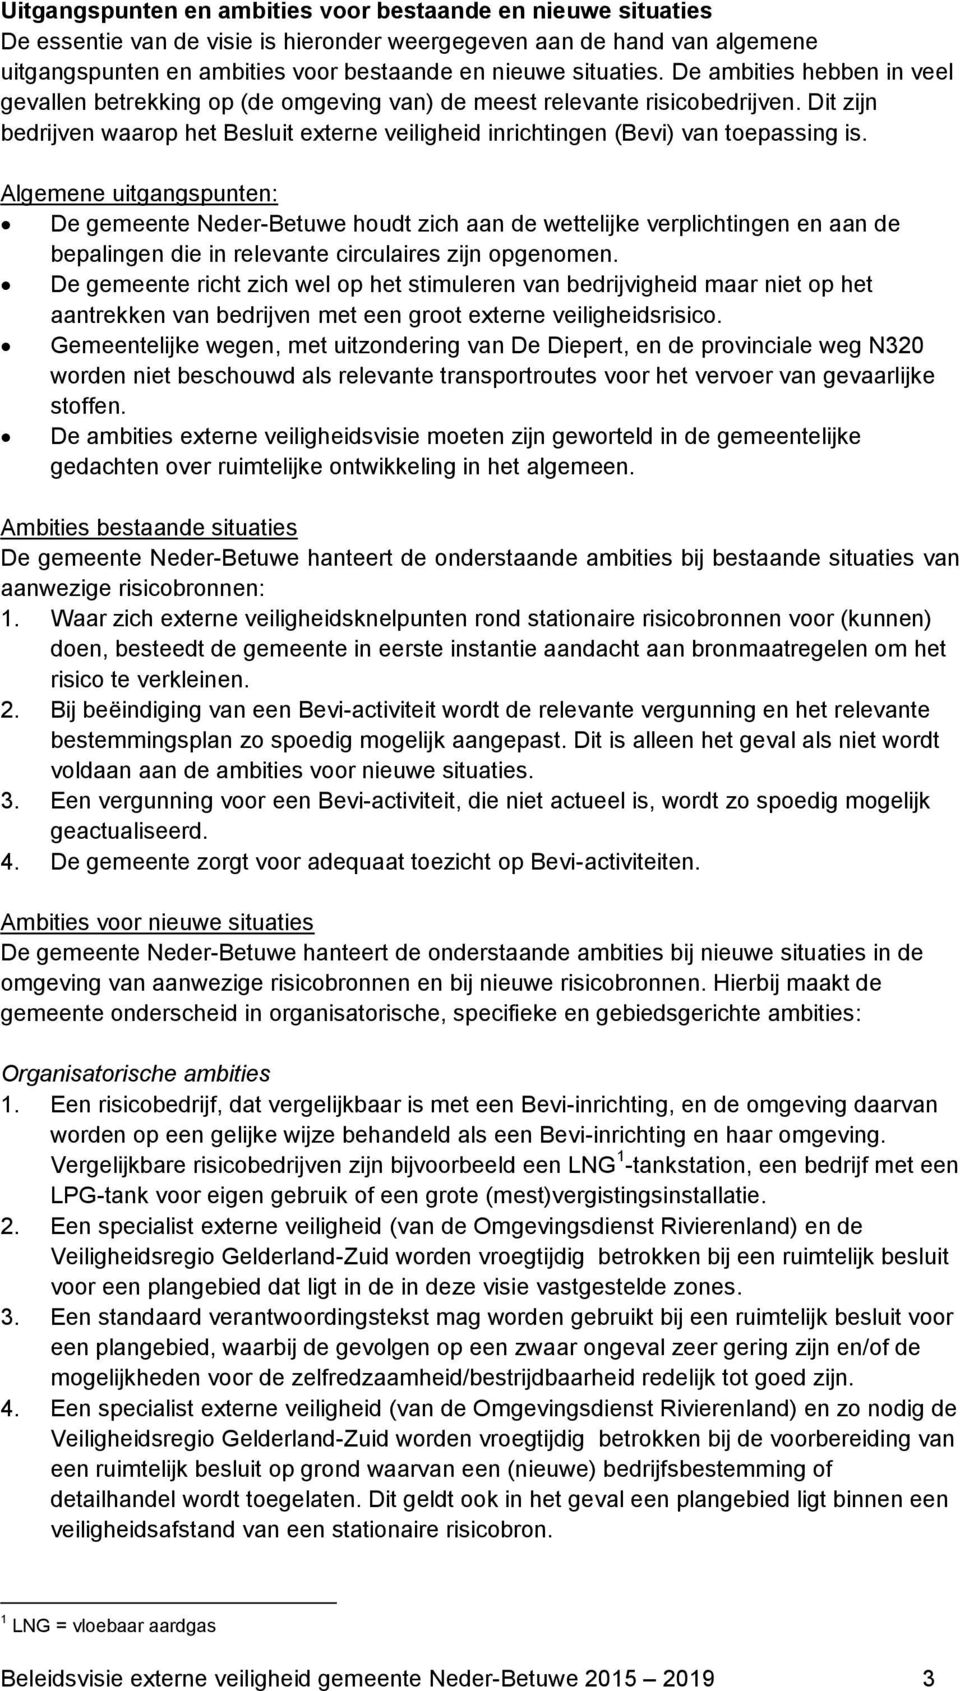 Algemene uitgangspunten: De gemeente Neder-Betuwe houdt zich aan de wettelijke verplichtingen en aan de bepalingen die in relevante circulaires zijn opgenomen.